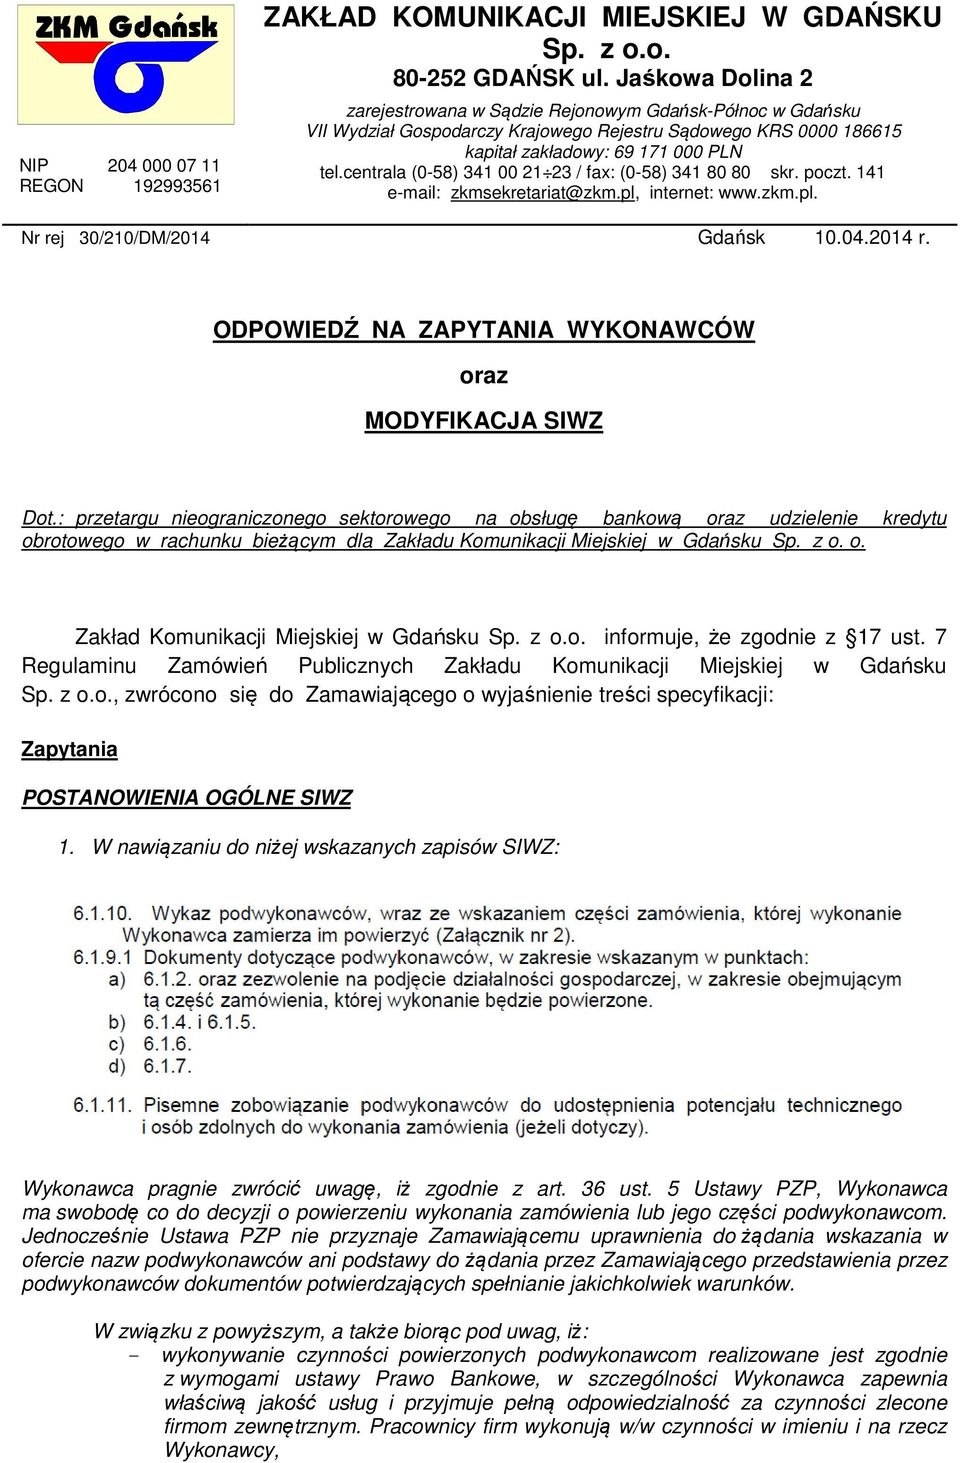 centrala (0-58) 341 00 21 23 / fax: (0-58) 341 80 80 skr. poczt. 141 e-mail: zkmsekretariat@zkm.pl, internet: www.zkm.pl. Nr rej 30/210/DM/2014 Gdańsk 10.04.2014 r.